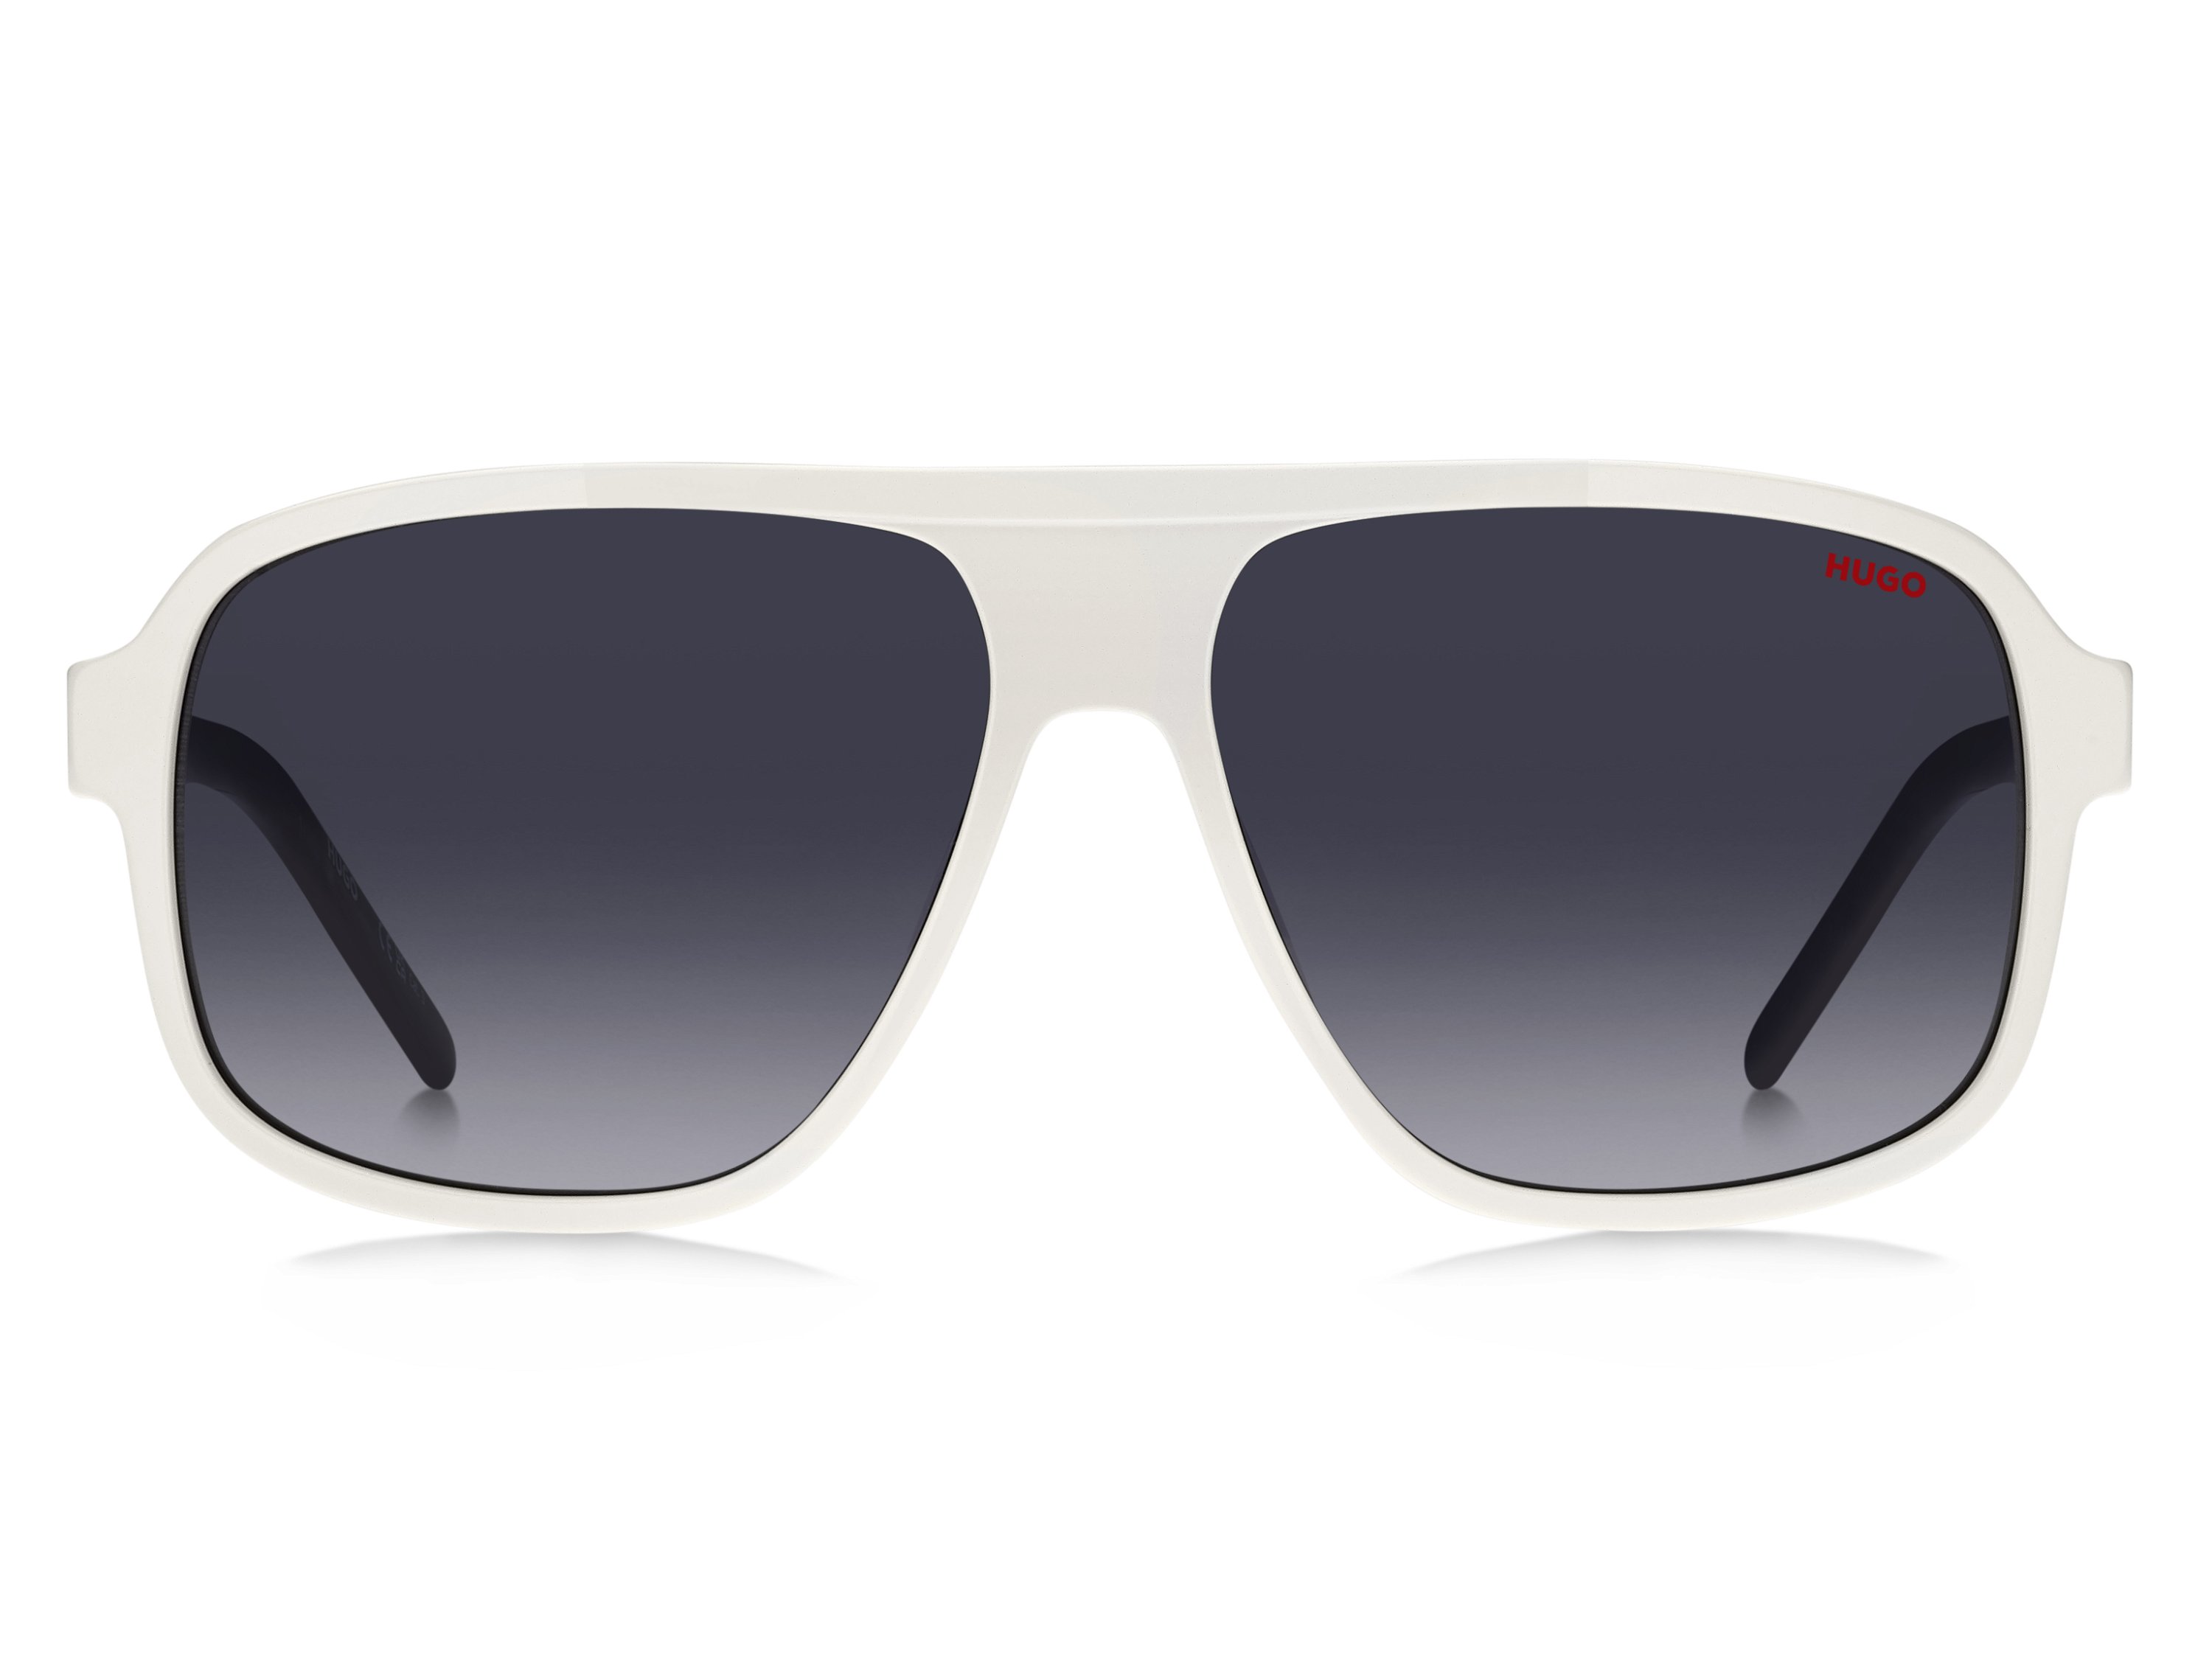 Das Bild zeigt die Sonnenbrille HG1296/S HYM von der Marke Hugo in weiß/schwarz.